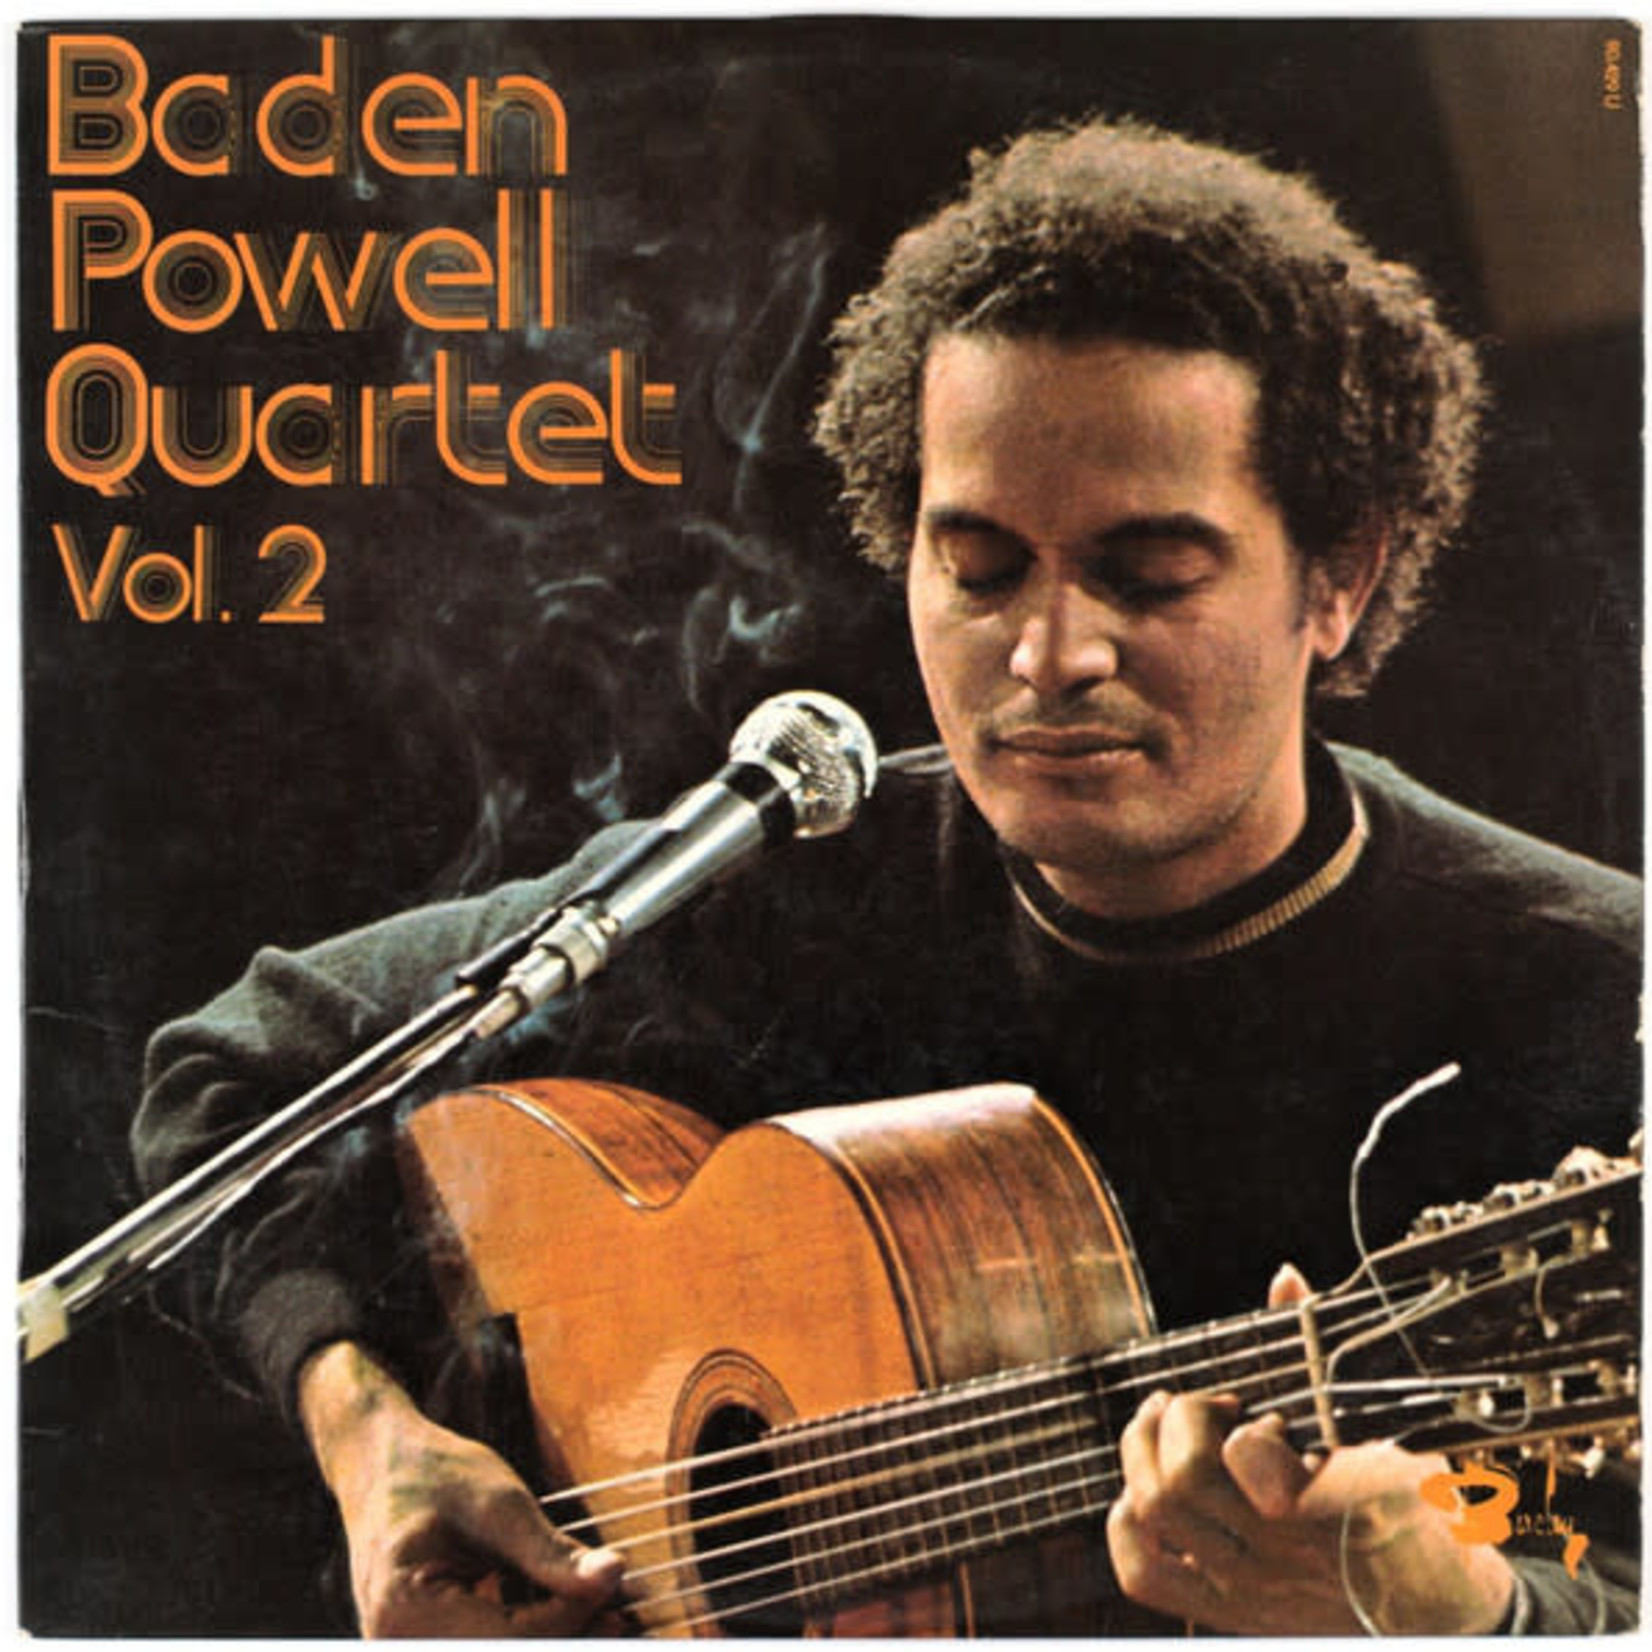 Baden Powell Quartet – Vol. 2